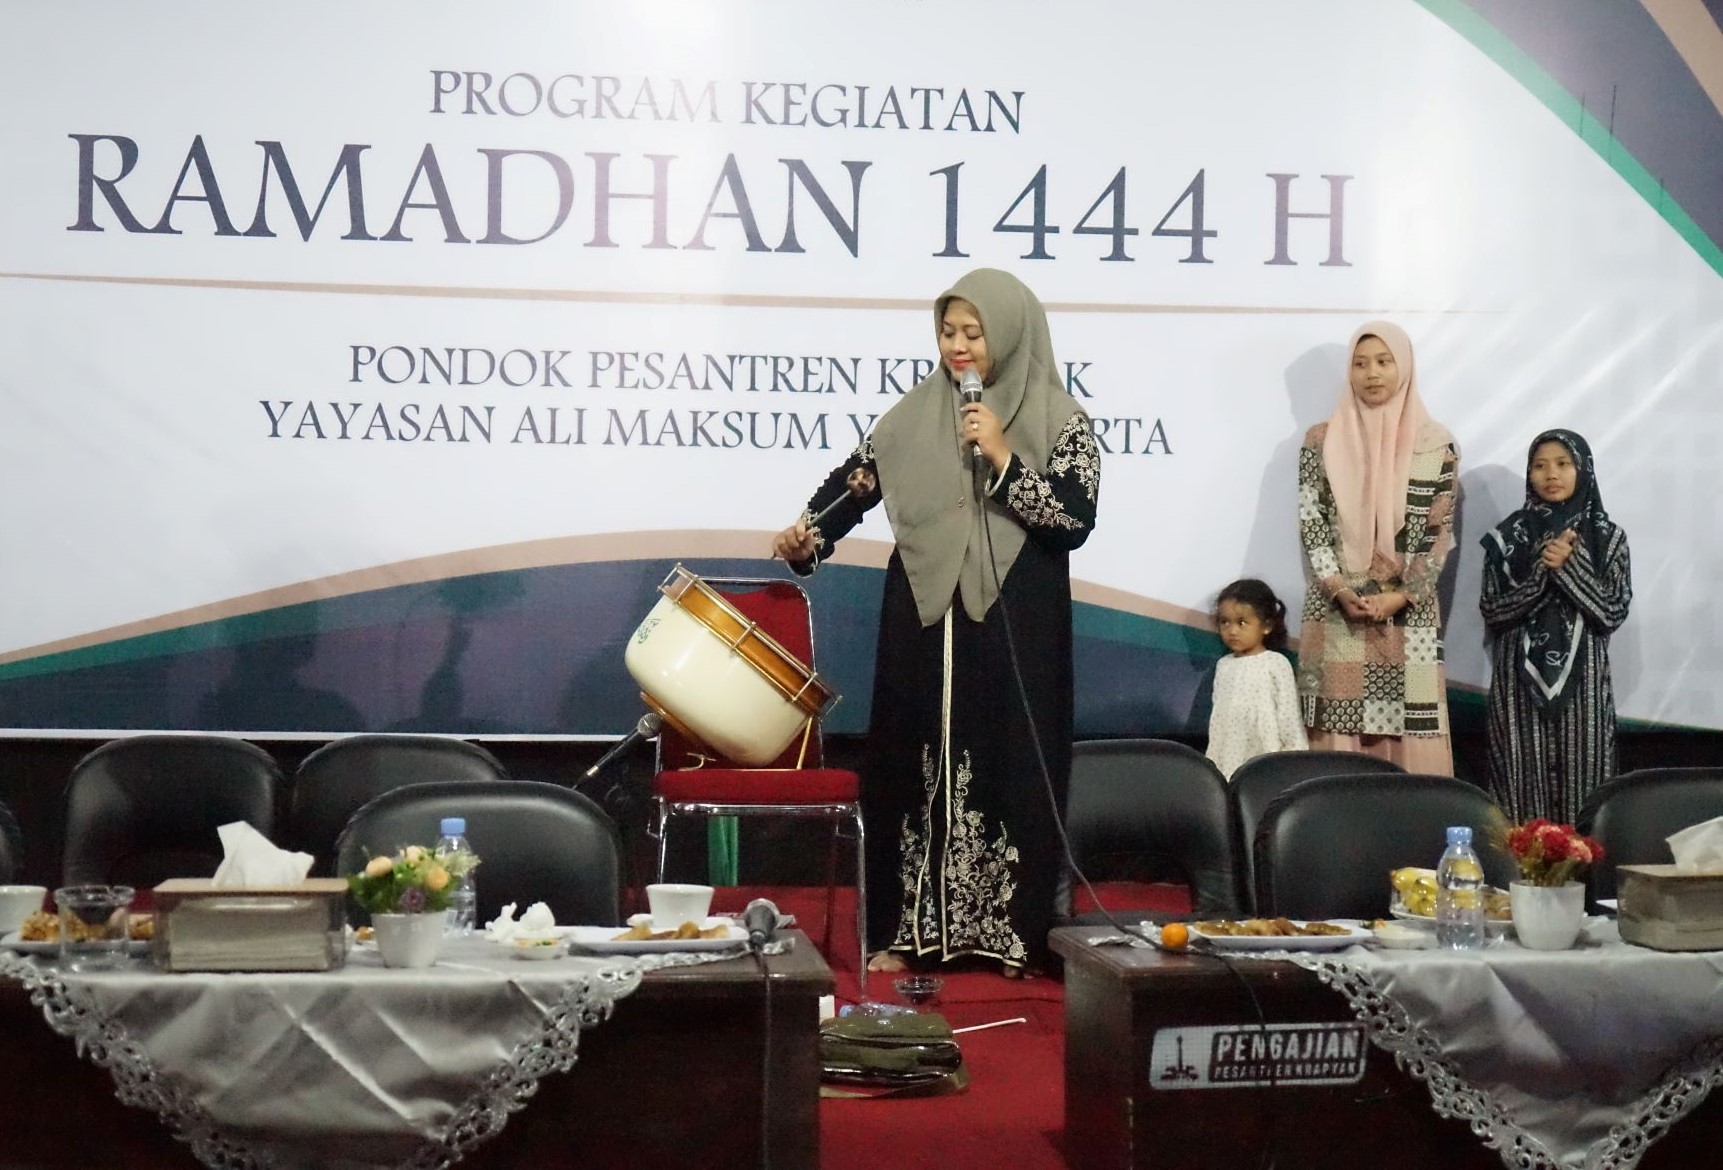 Pondok Pesantren Krapyak Membuka Program Kegiatan Ramadhan (PKR) dengan Sholawat Bersama